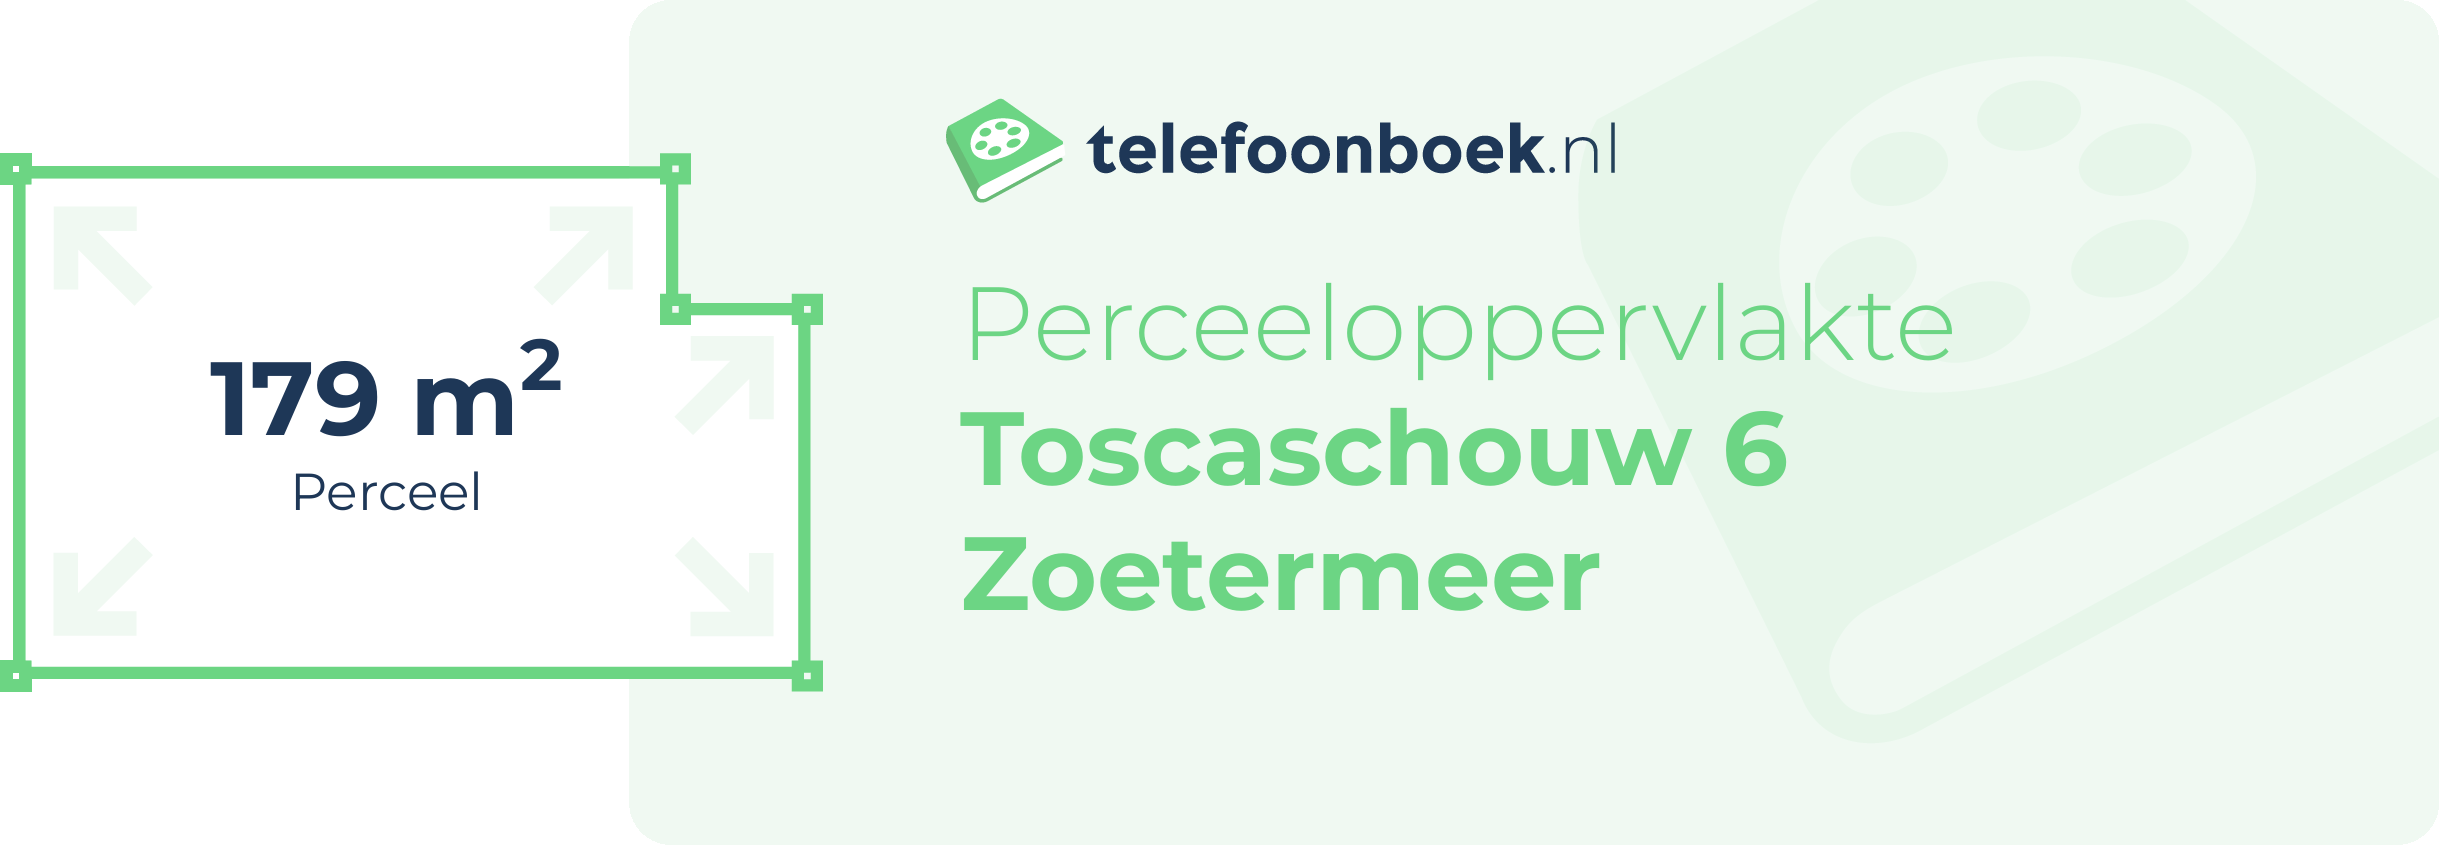 Perceeloppervlakte Toscaschouw 6 Zoetermeer